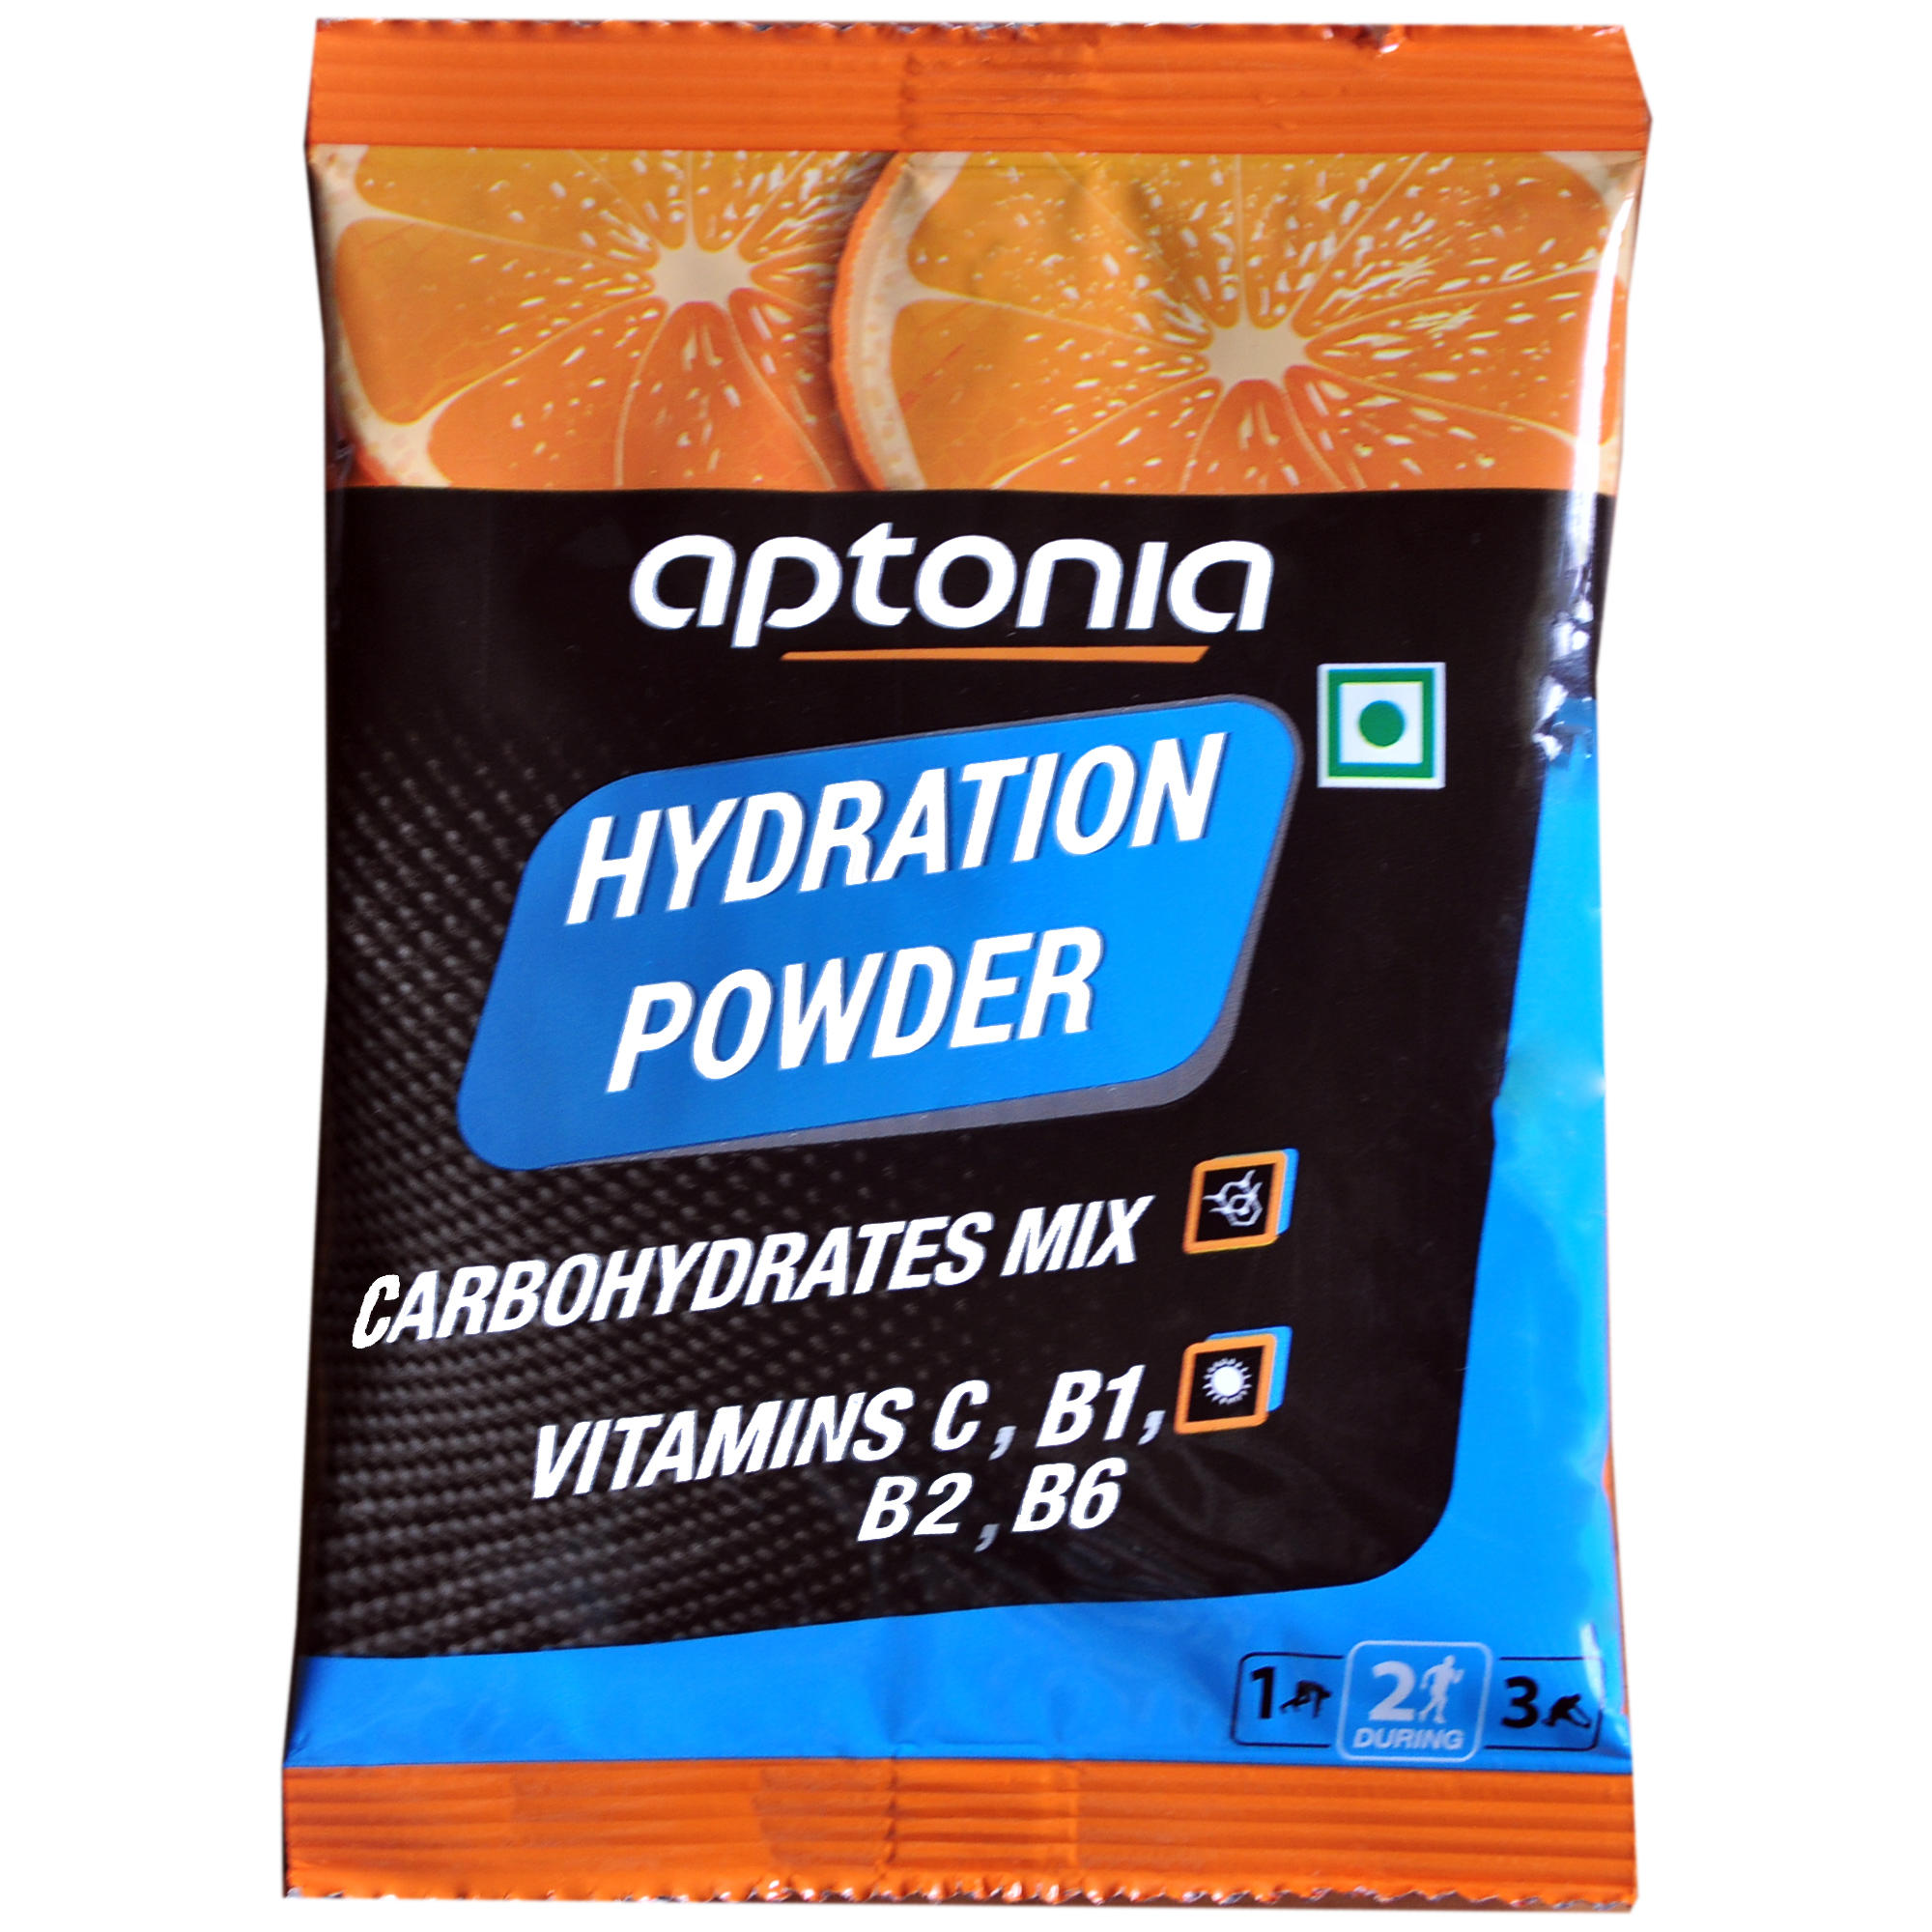 aptonia hydration powder